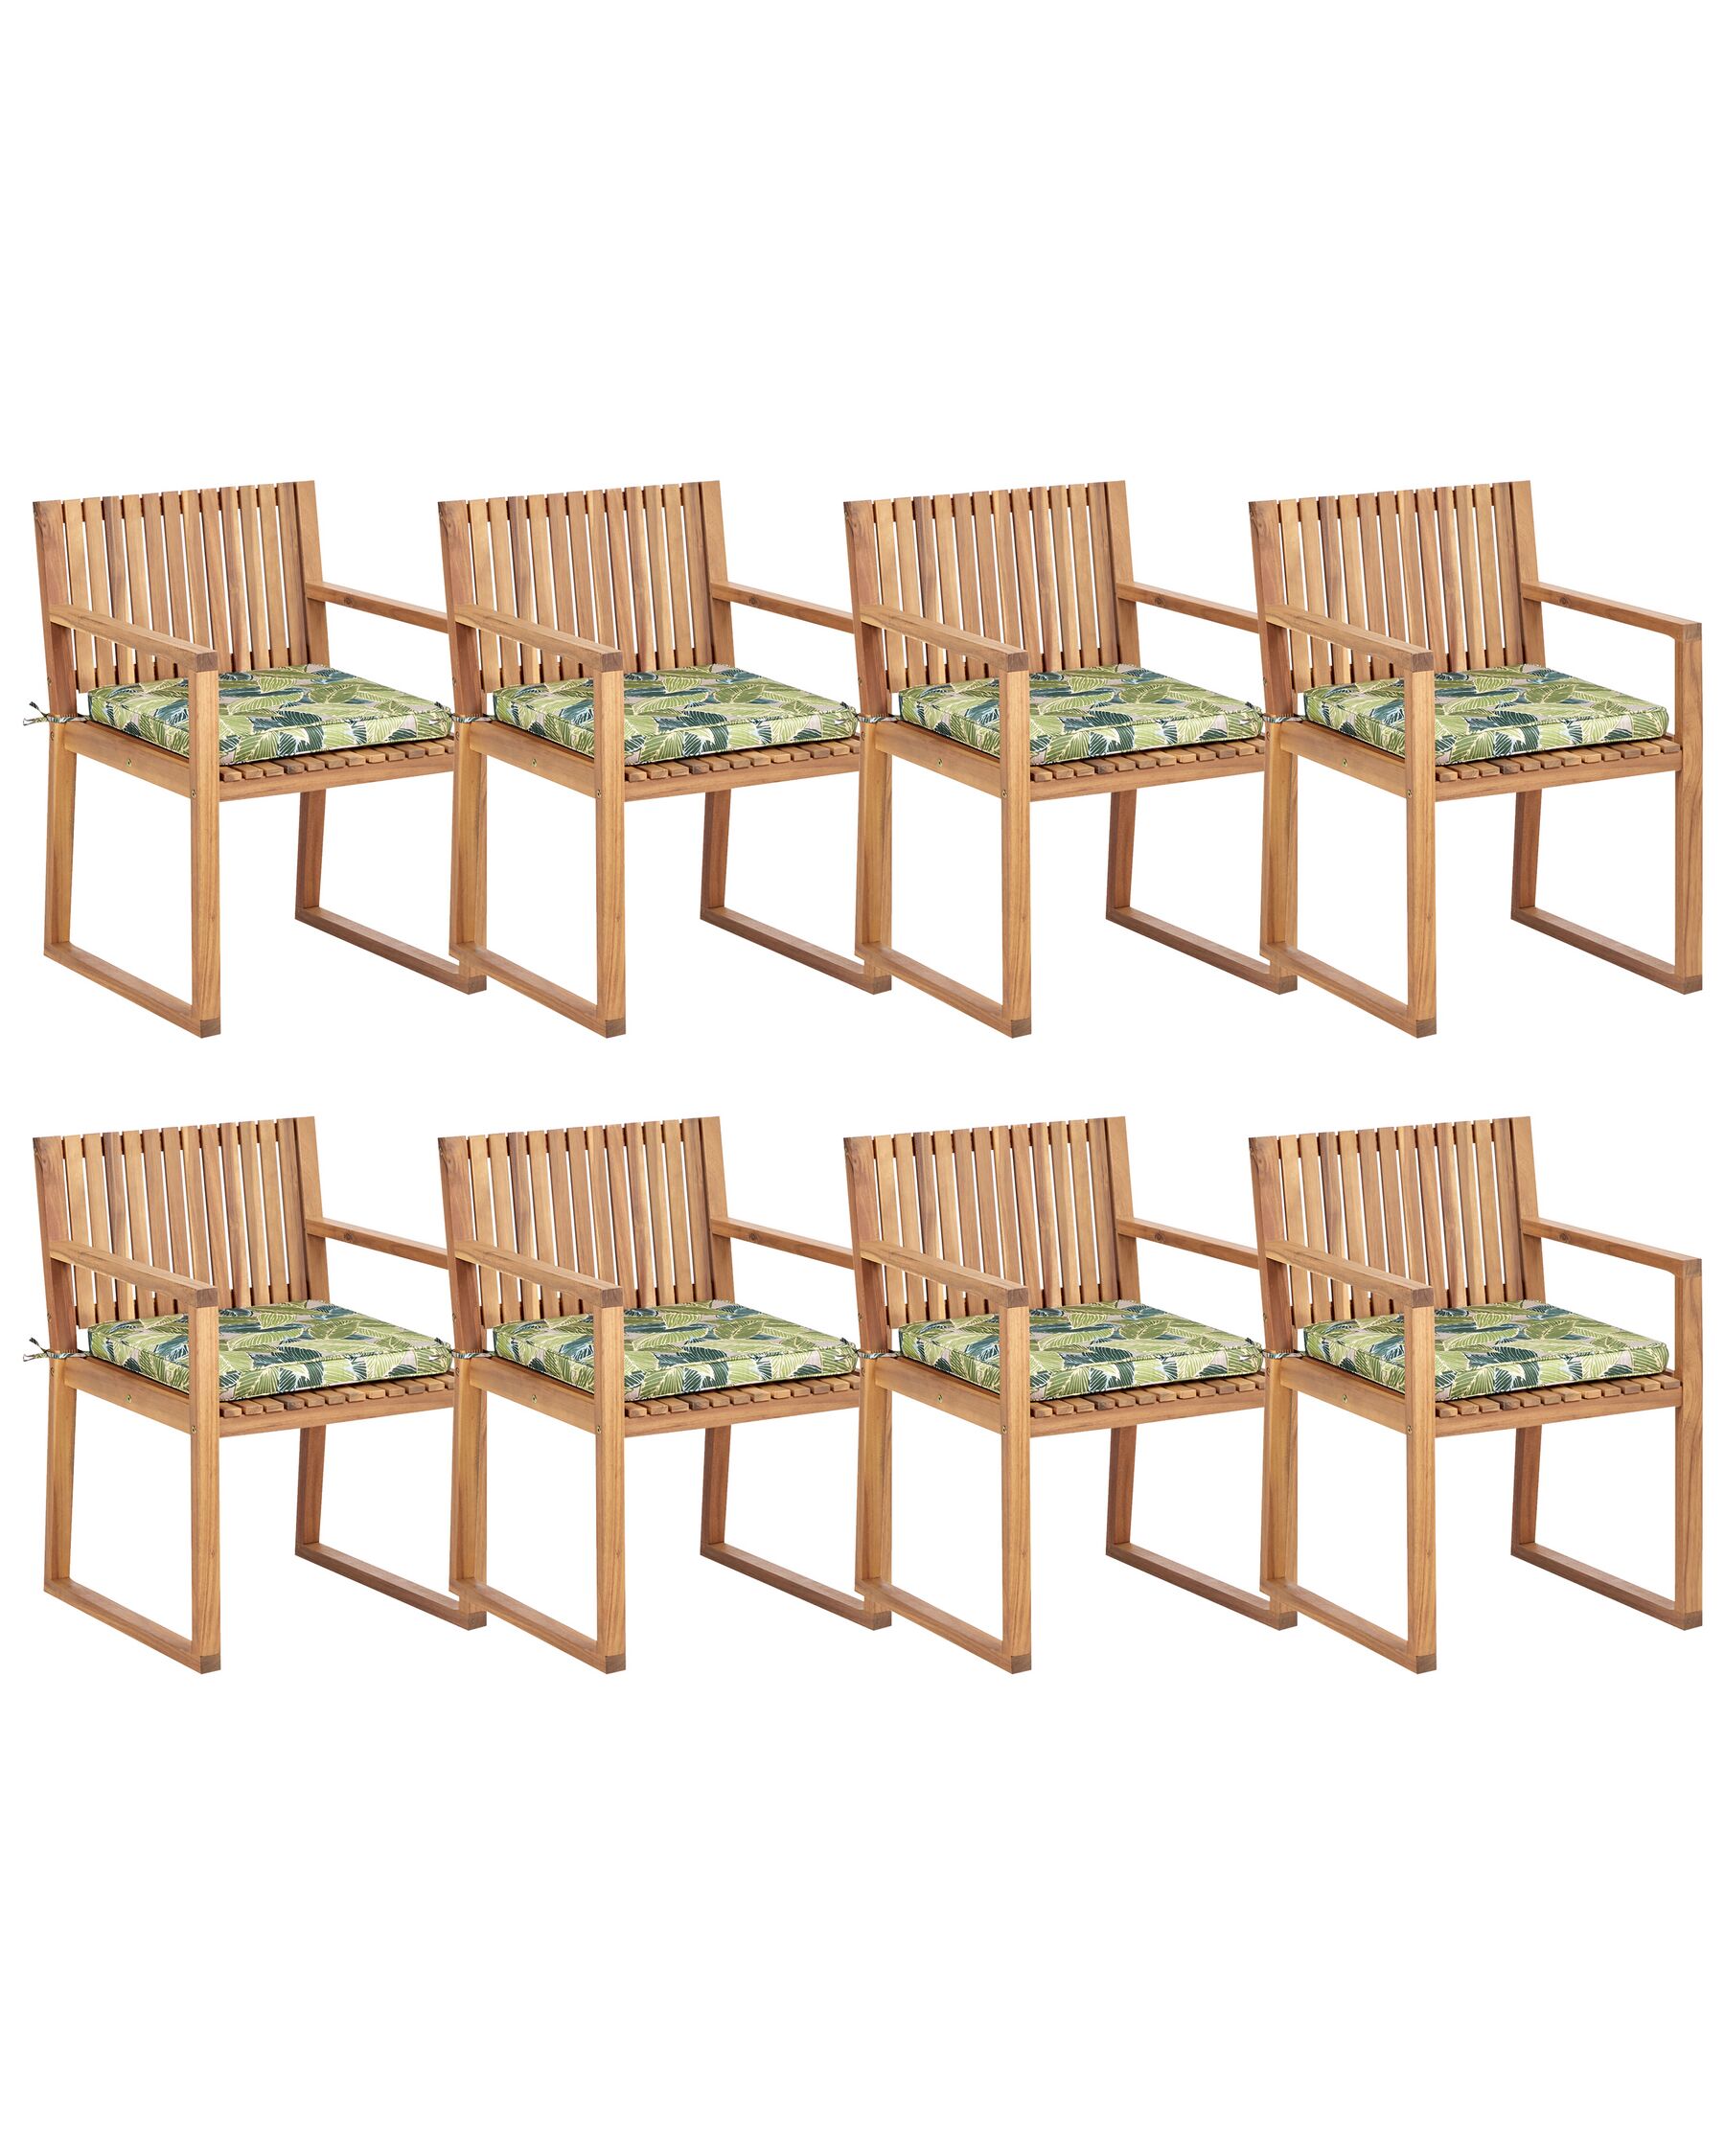 Sada 8 záhradných stoličiek svetlé certifikované akáciové drevo/zelené podsedáky SASSARI II_923944